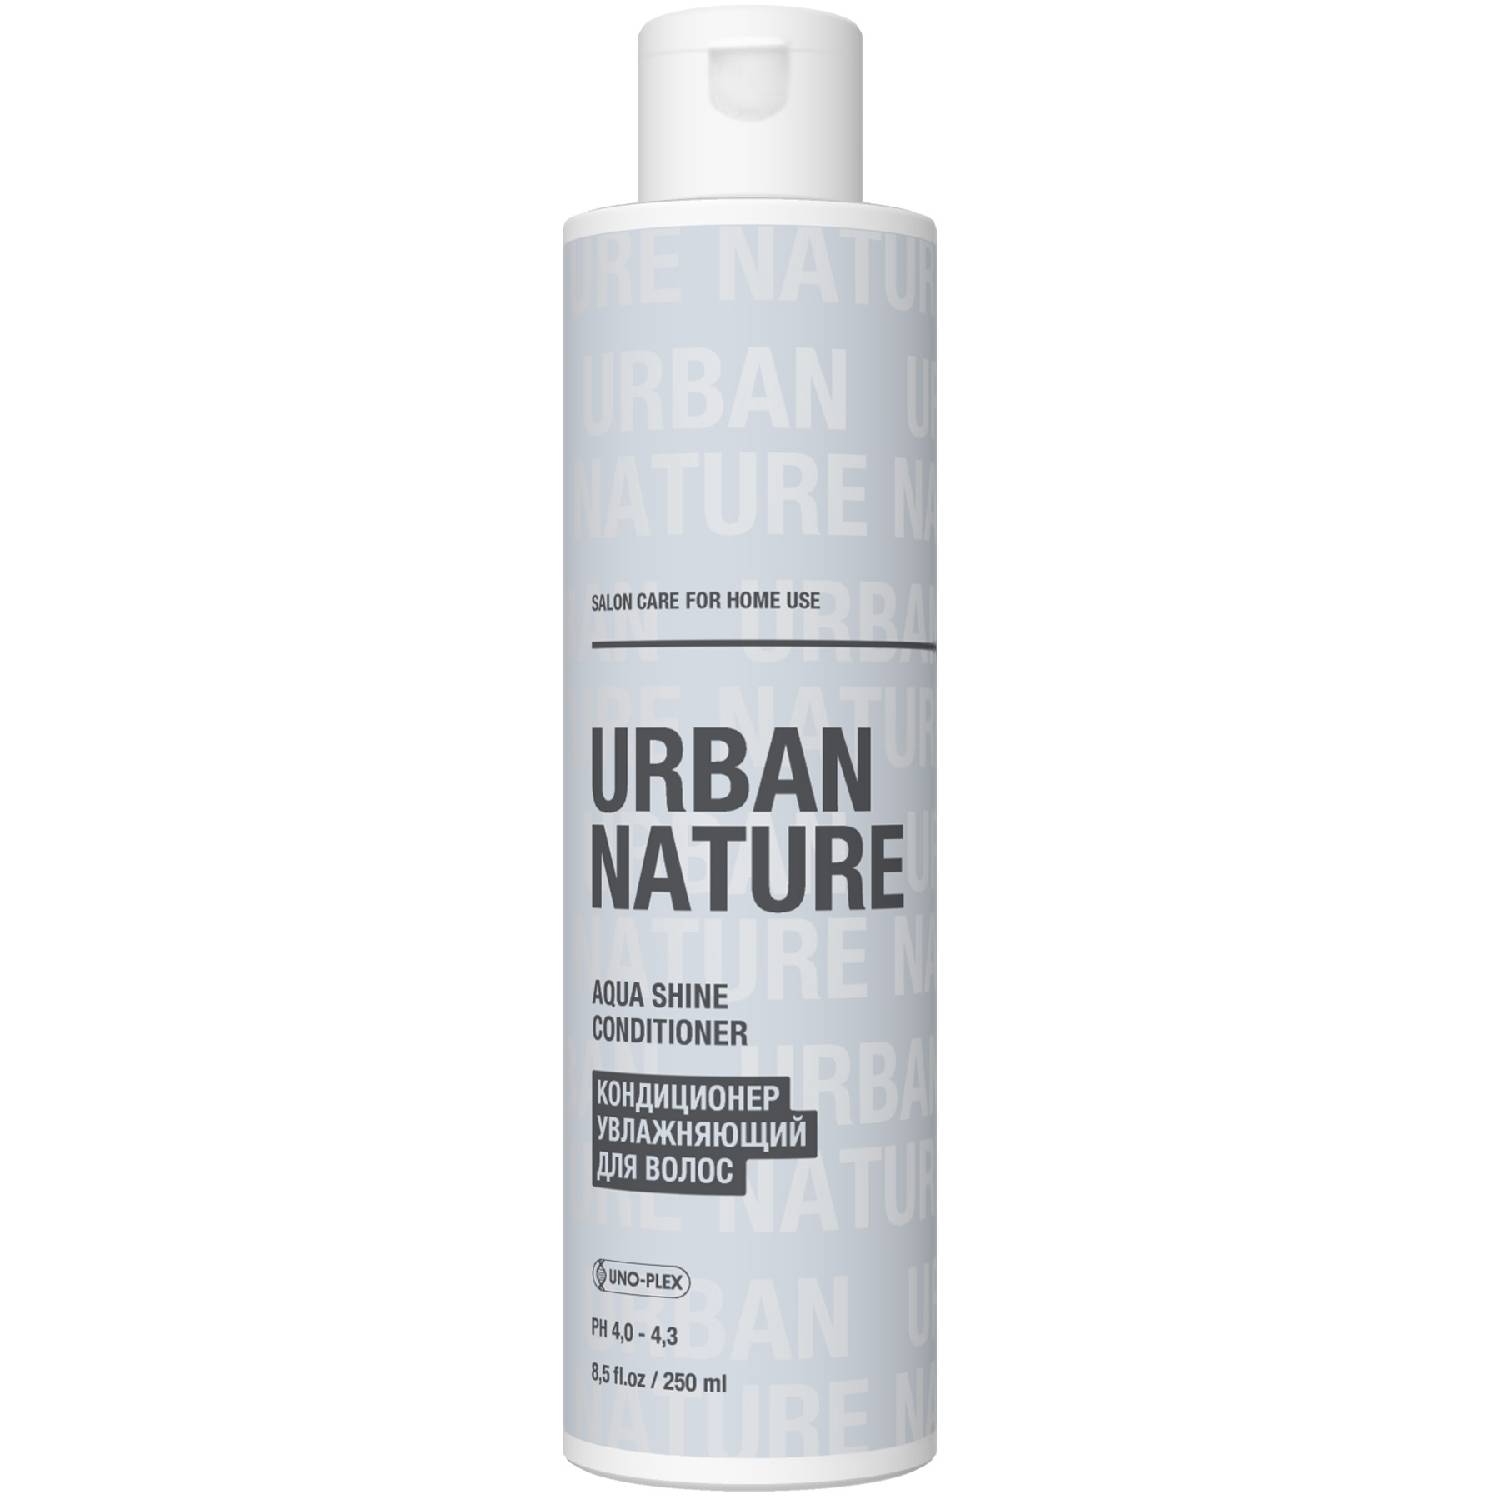 Urban Nature Увлажняющий кондиционер для волос, 250 мл (Urban Nature, Aqua Shine) спрей концентрат для увлажнения и блеска волос urban nature aqua shine 200 мл